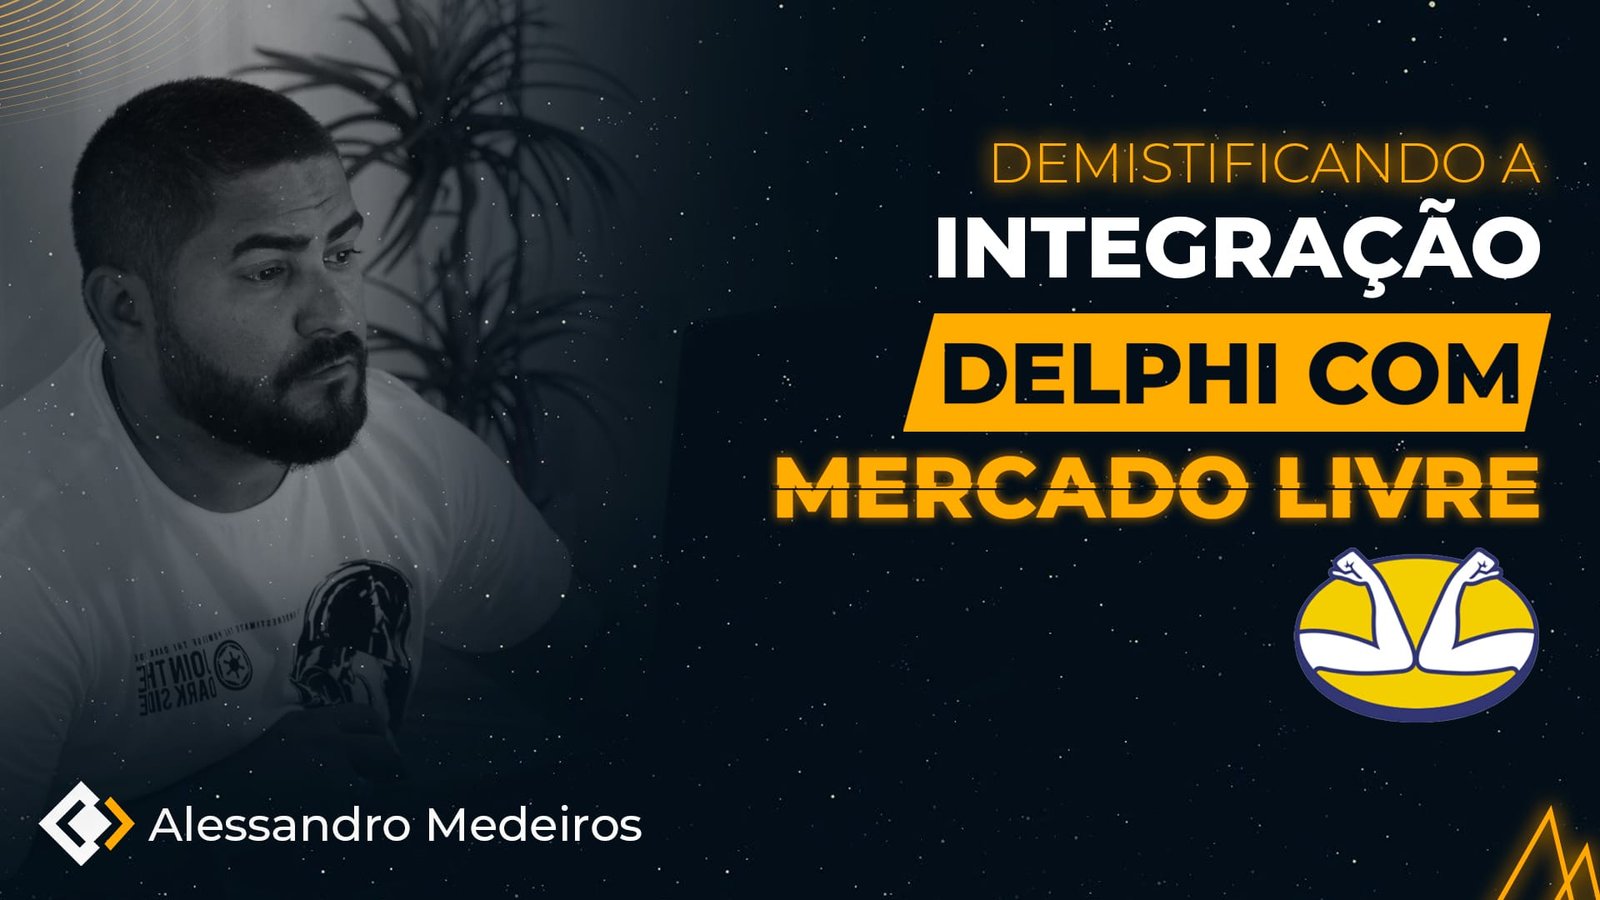 Live Integração Delphi com Mercado Livre - Academia do Código